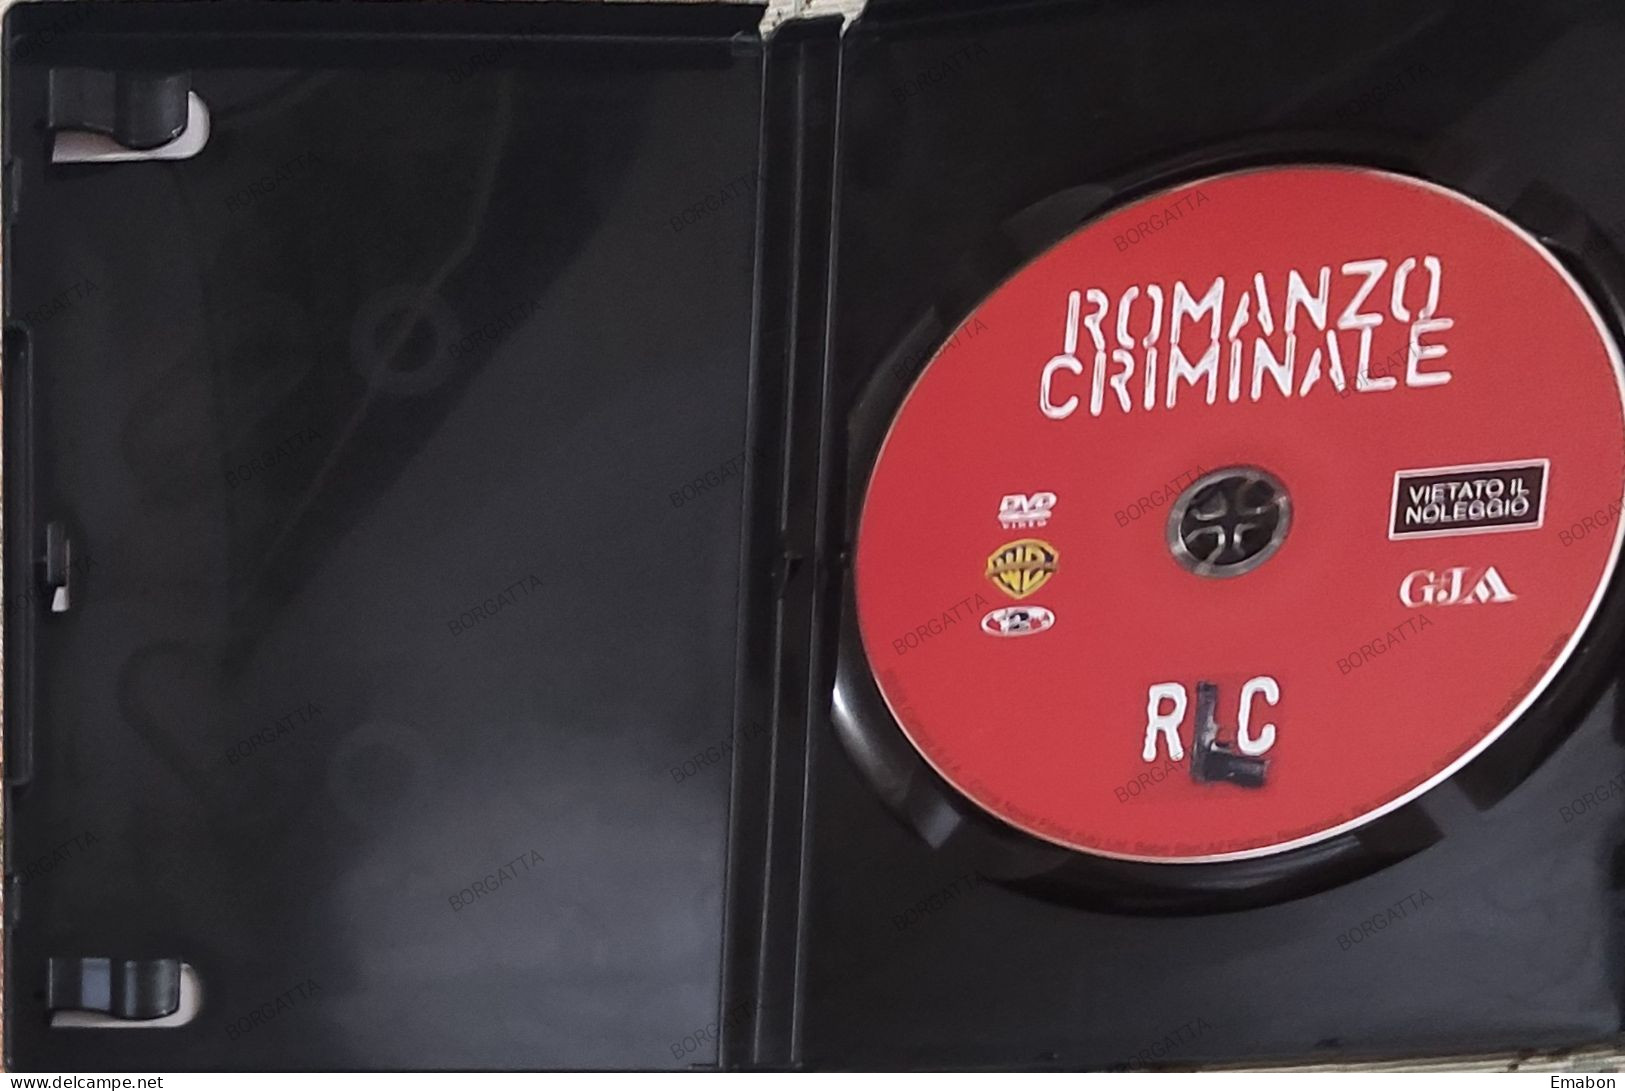 BORGATTA - DRAMMA - Dvd  " ROMANZO CRIMINALE " MICHELE PLACIDO - PAL 2 - WARNER 2008-  USATO In Buono Stato - Drama